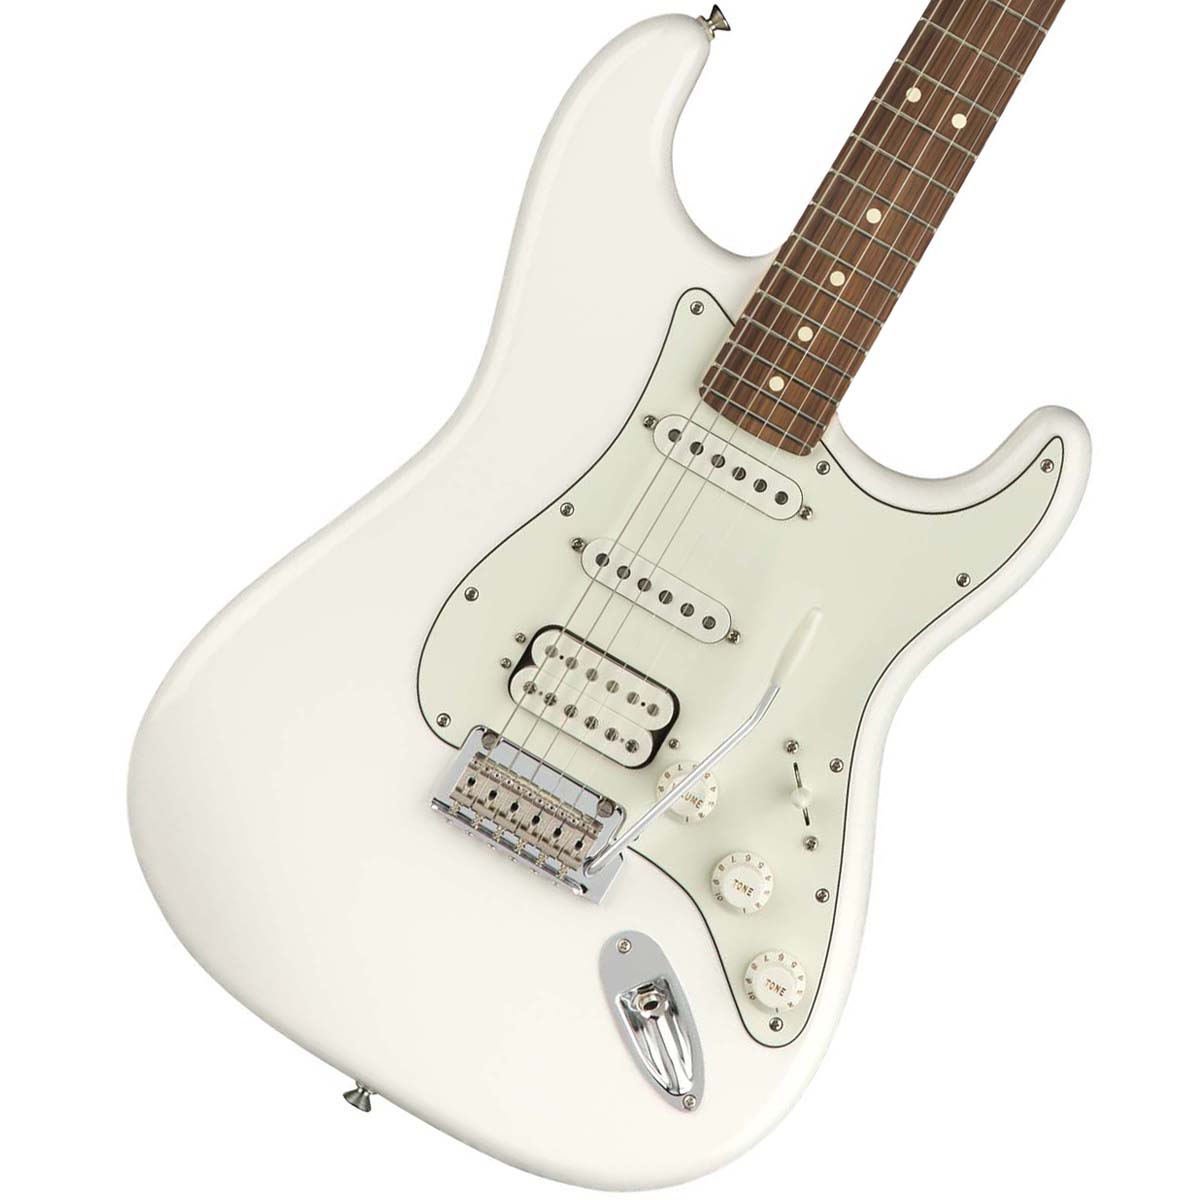 プレーヤー視点から新たなStandardを体現したおすすめモデル！  Fender   Player Series Stratocaster HSS Polar White Pau Ferro